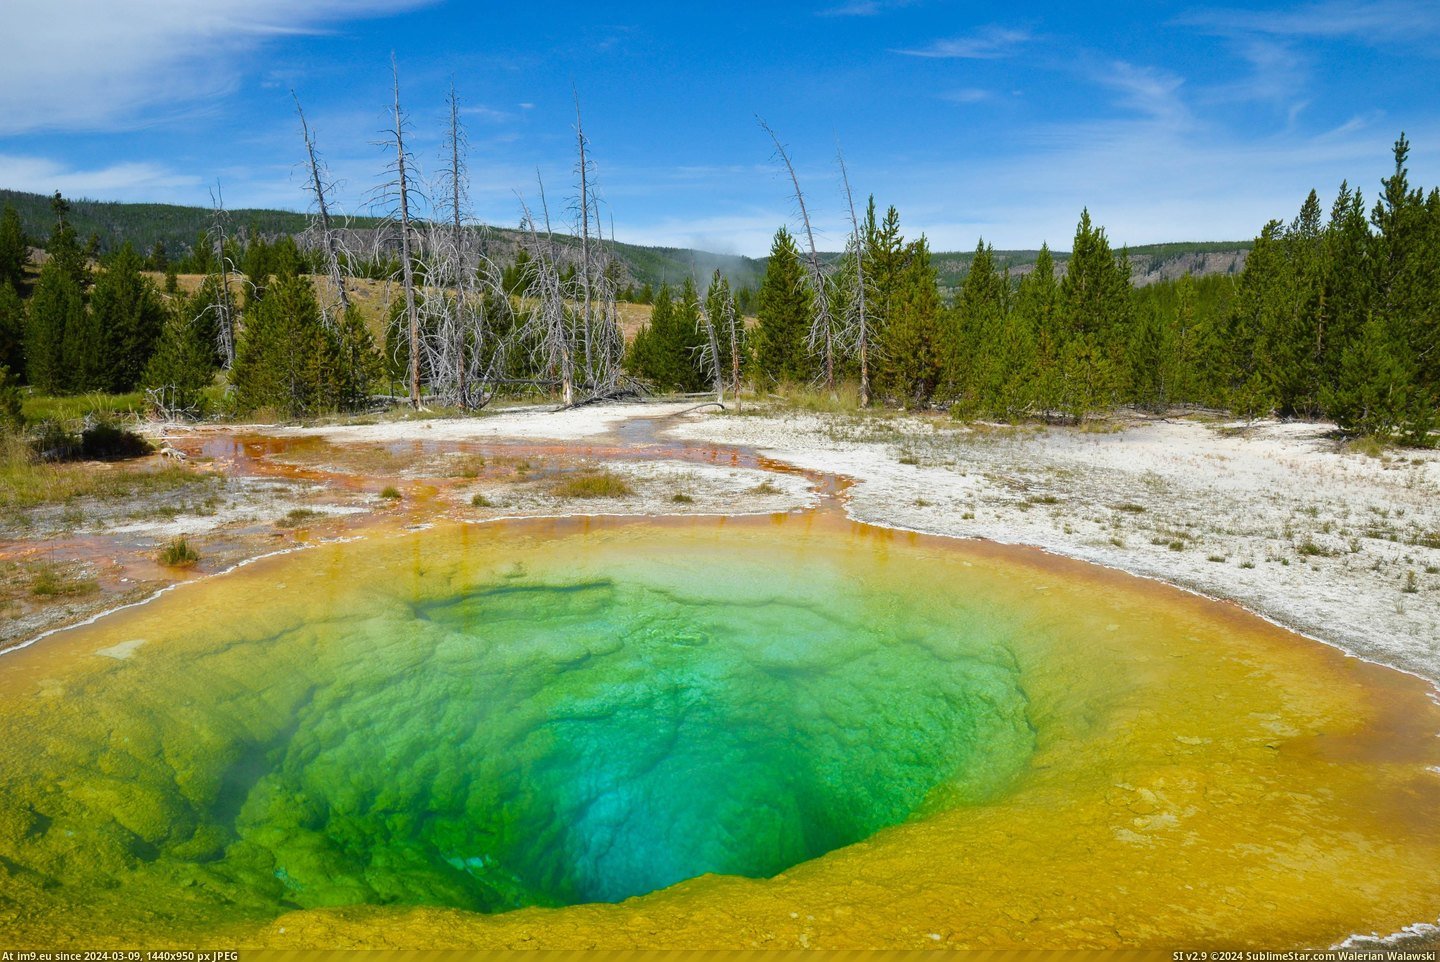 #Beautiful #Morning #Yellowstone #Glory #Pool #Colors [Earthporn]  The beautiful colors of the Morning Glory Pool, Yellowstone [4928×3264] Pic. (Image of album My r/EARTHPORN favs))